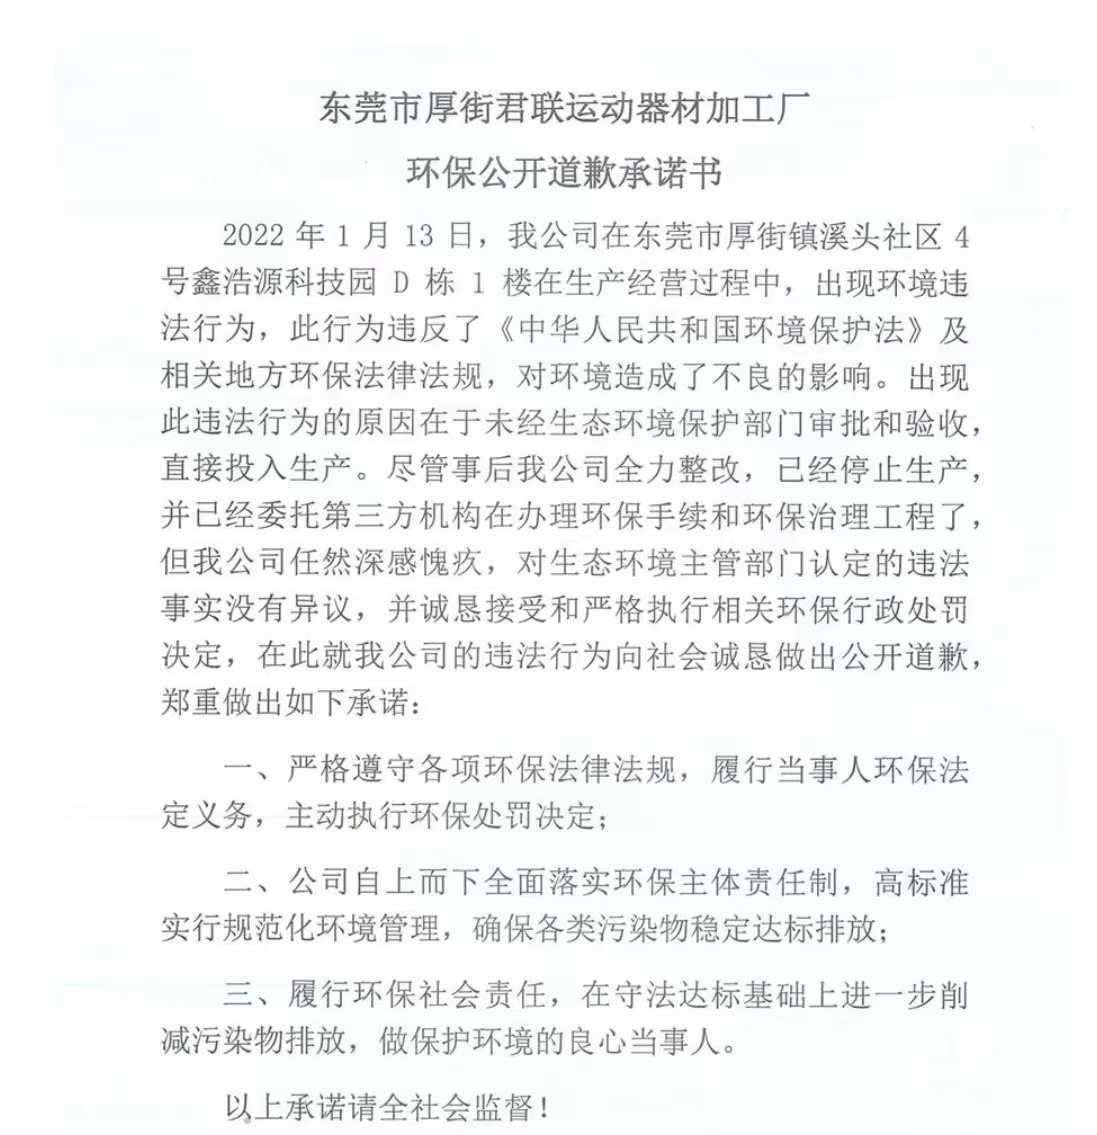 君联运动在媒体上发布的《公开道歉承诺书》。截图